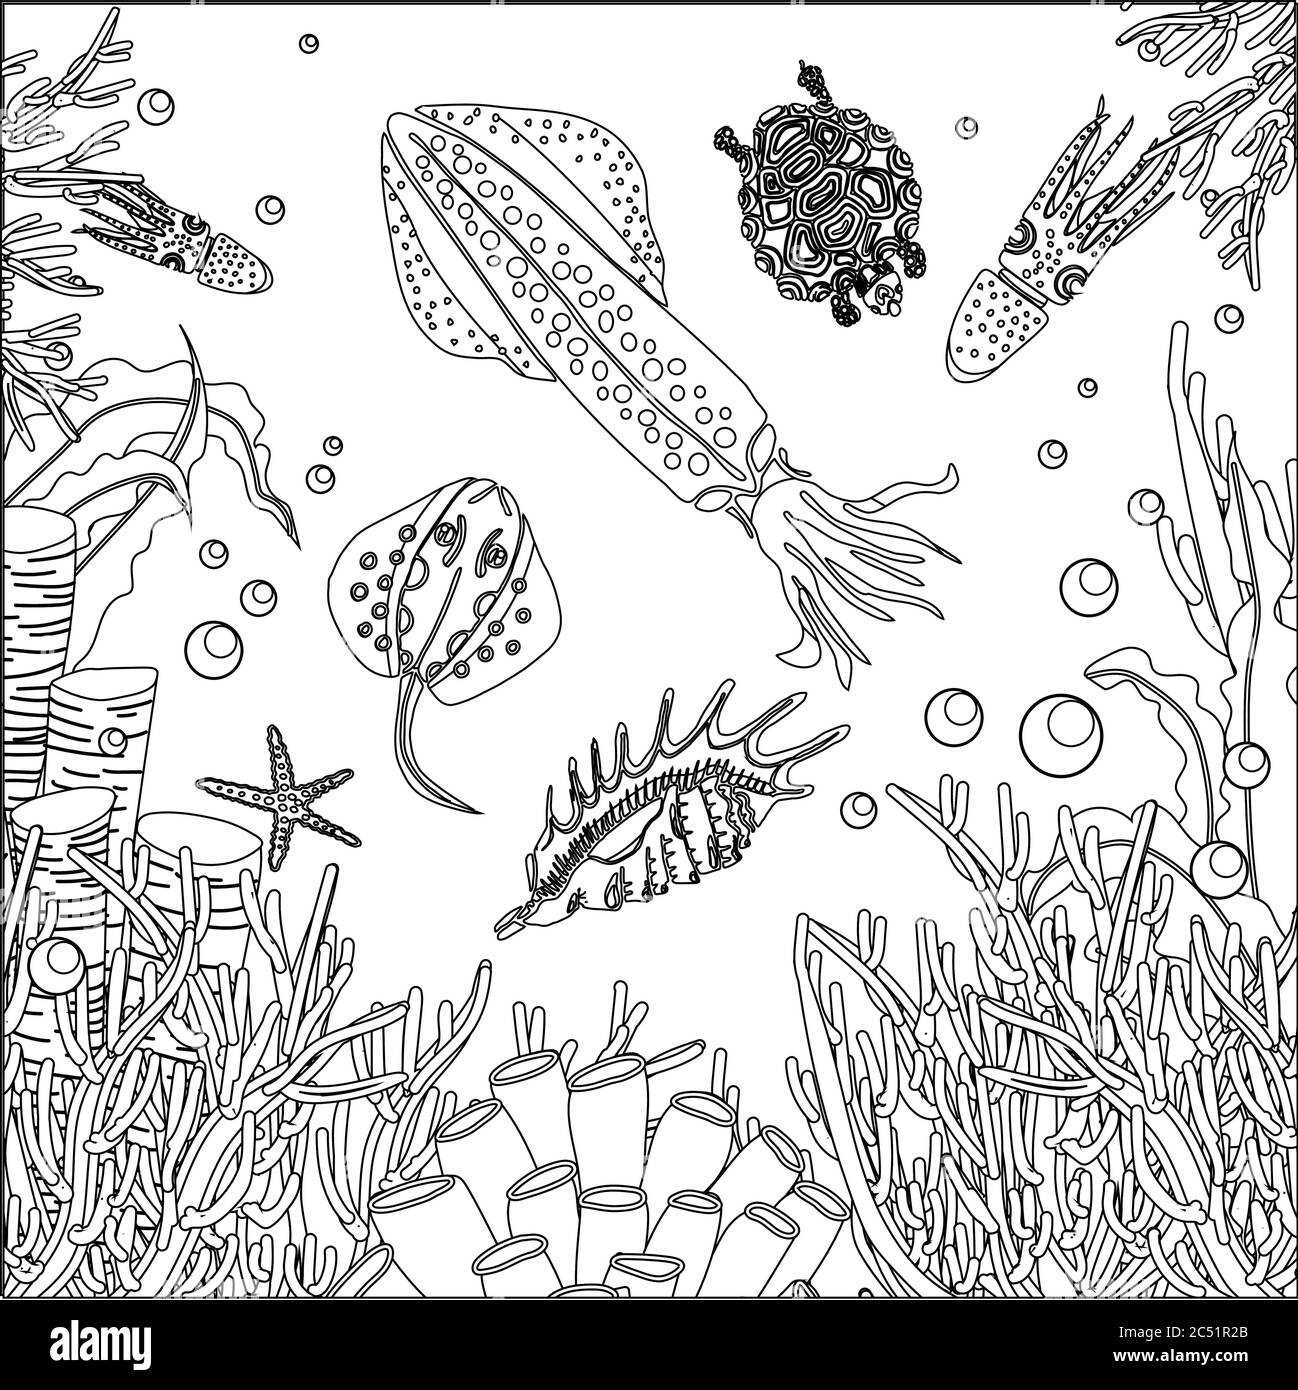 Unterwasser Welt Ausmalbilder. Tintenfisch und Algen. Antistress